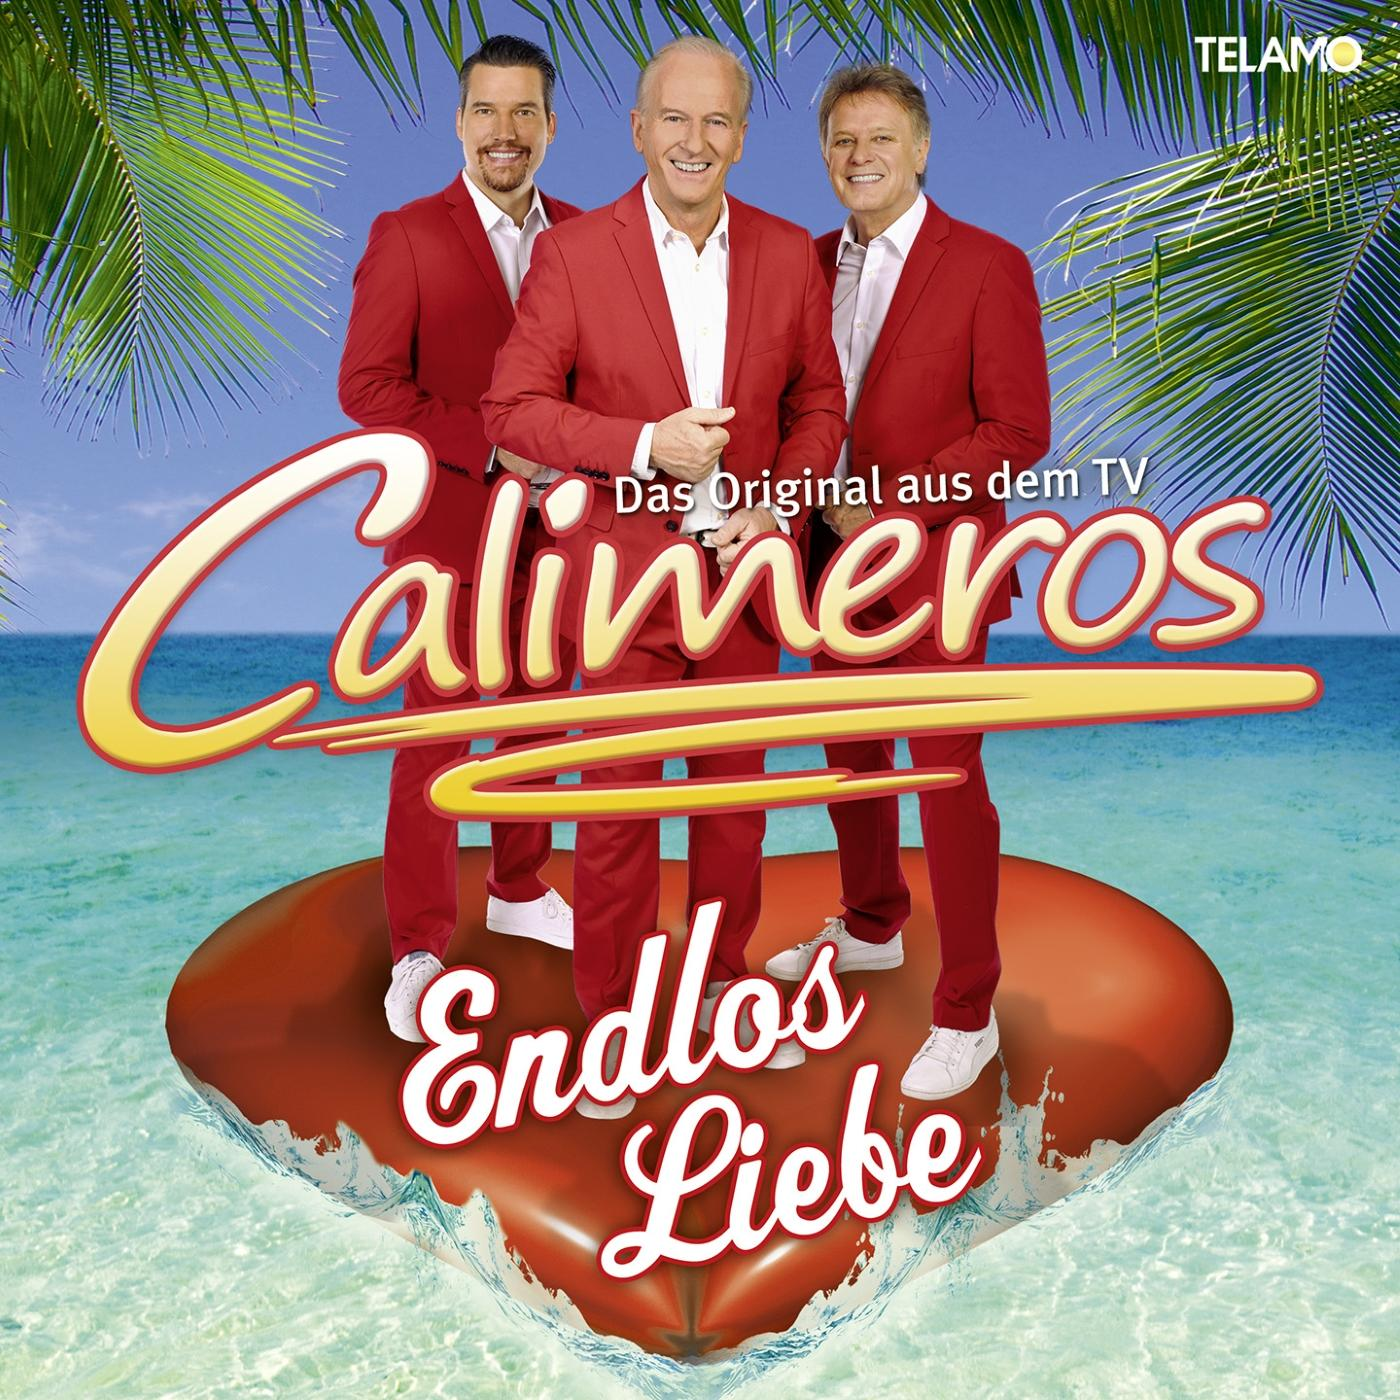 Calimeros - Endlos (CD) Liebe 